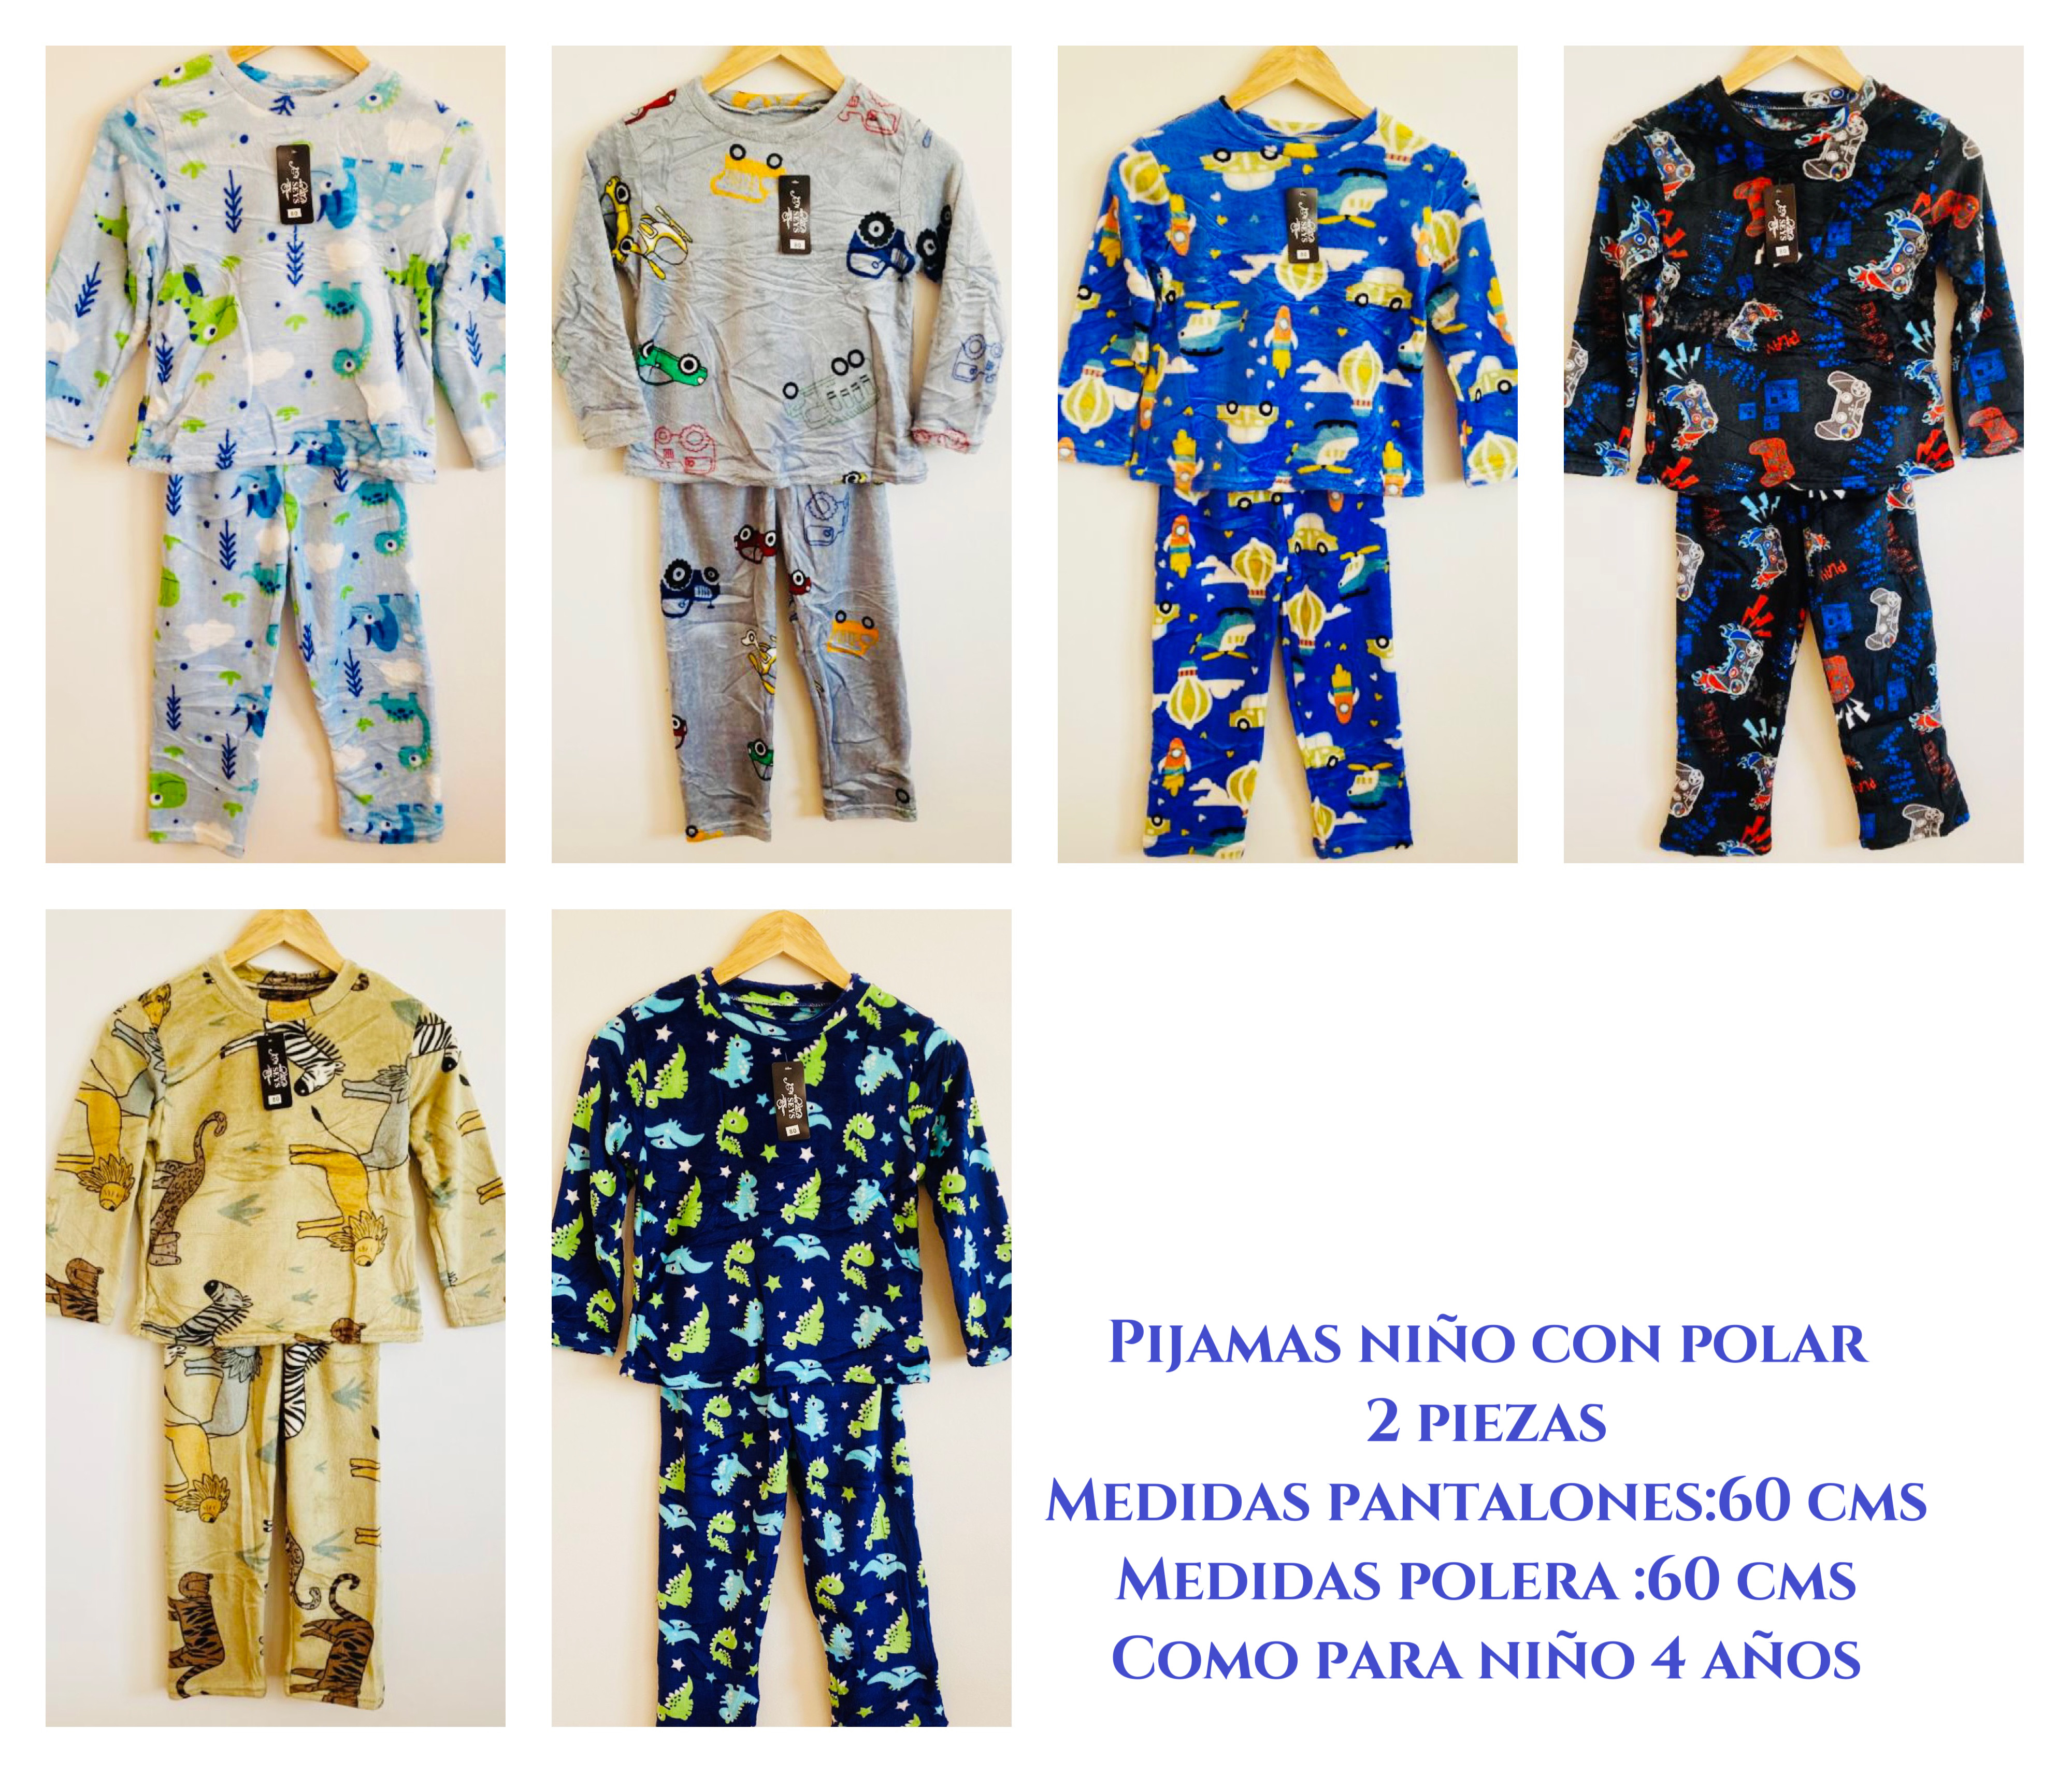 Convocar Turista Decremento Pijamas niño con polar talla única como para 4 años .diseños